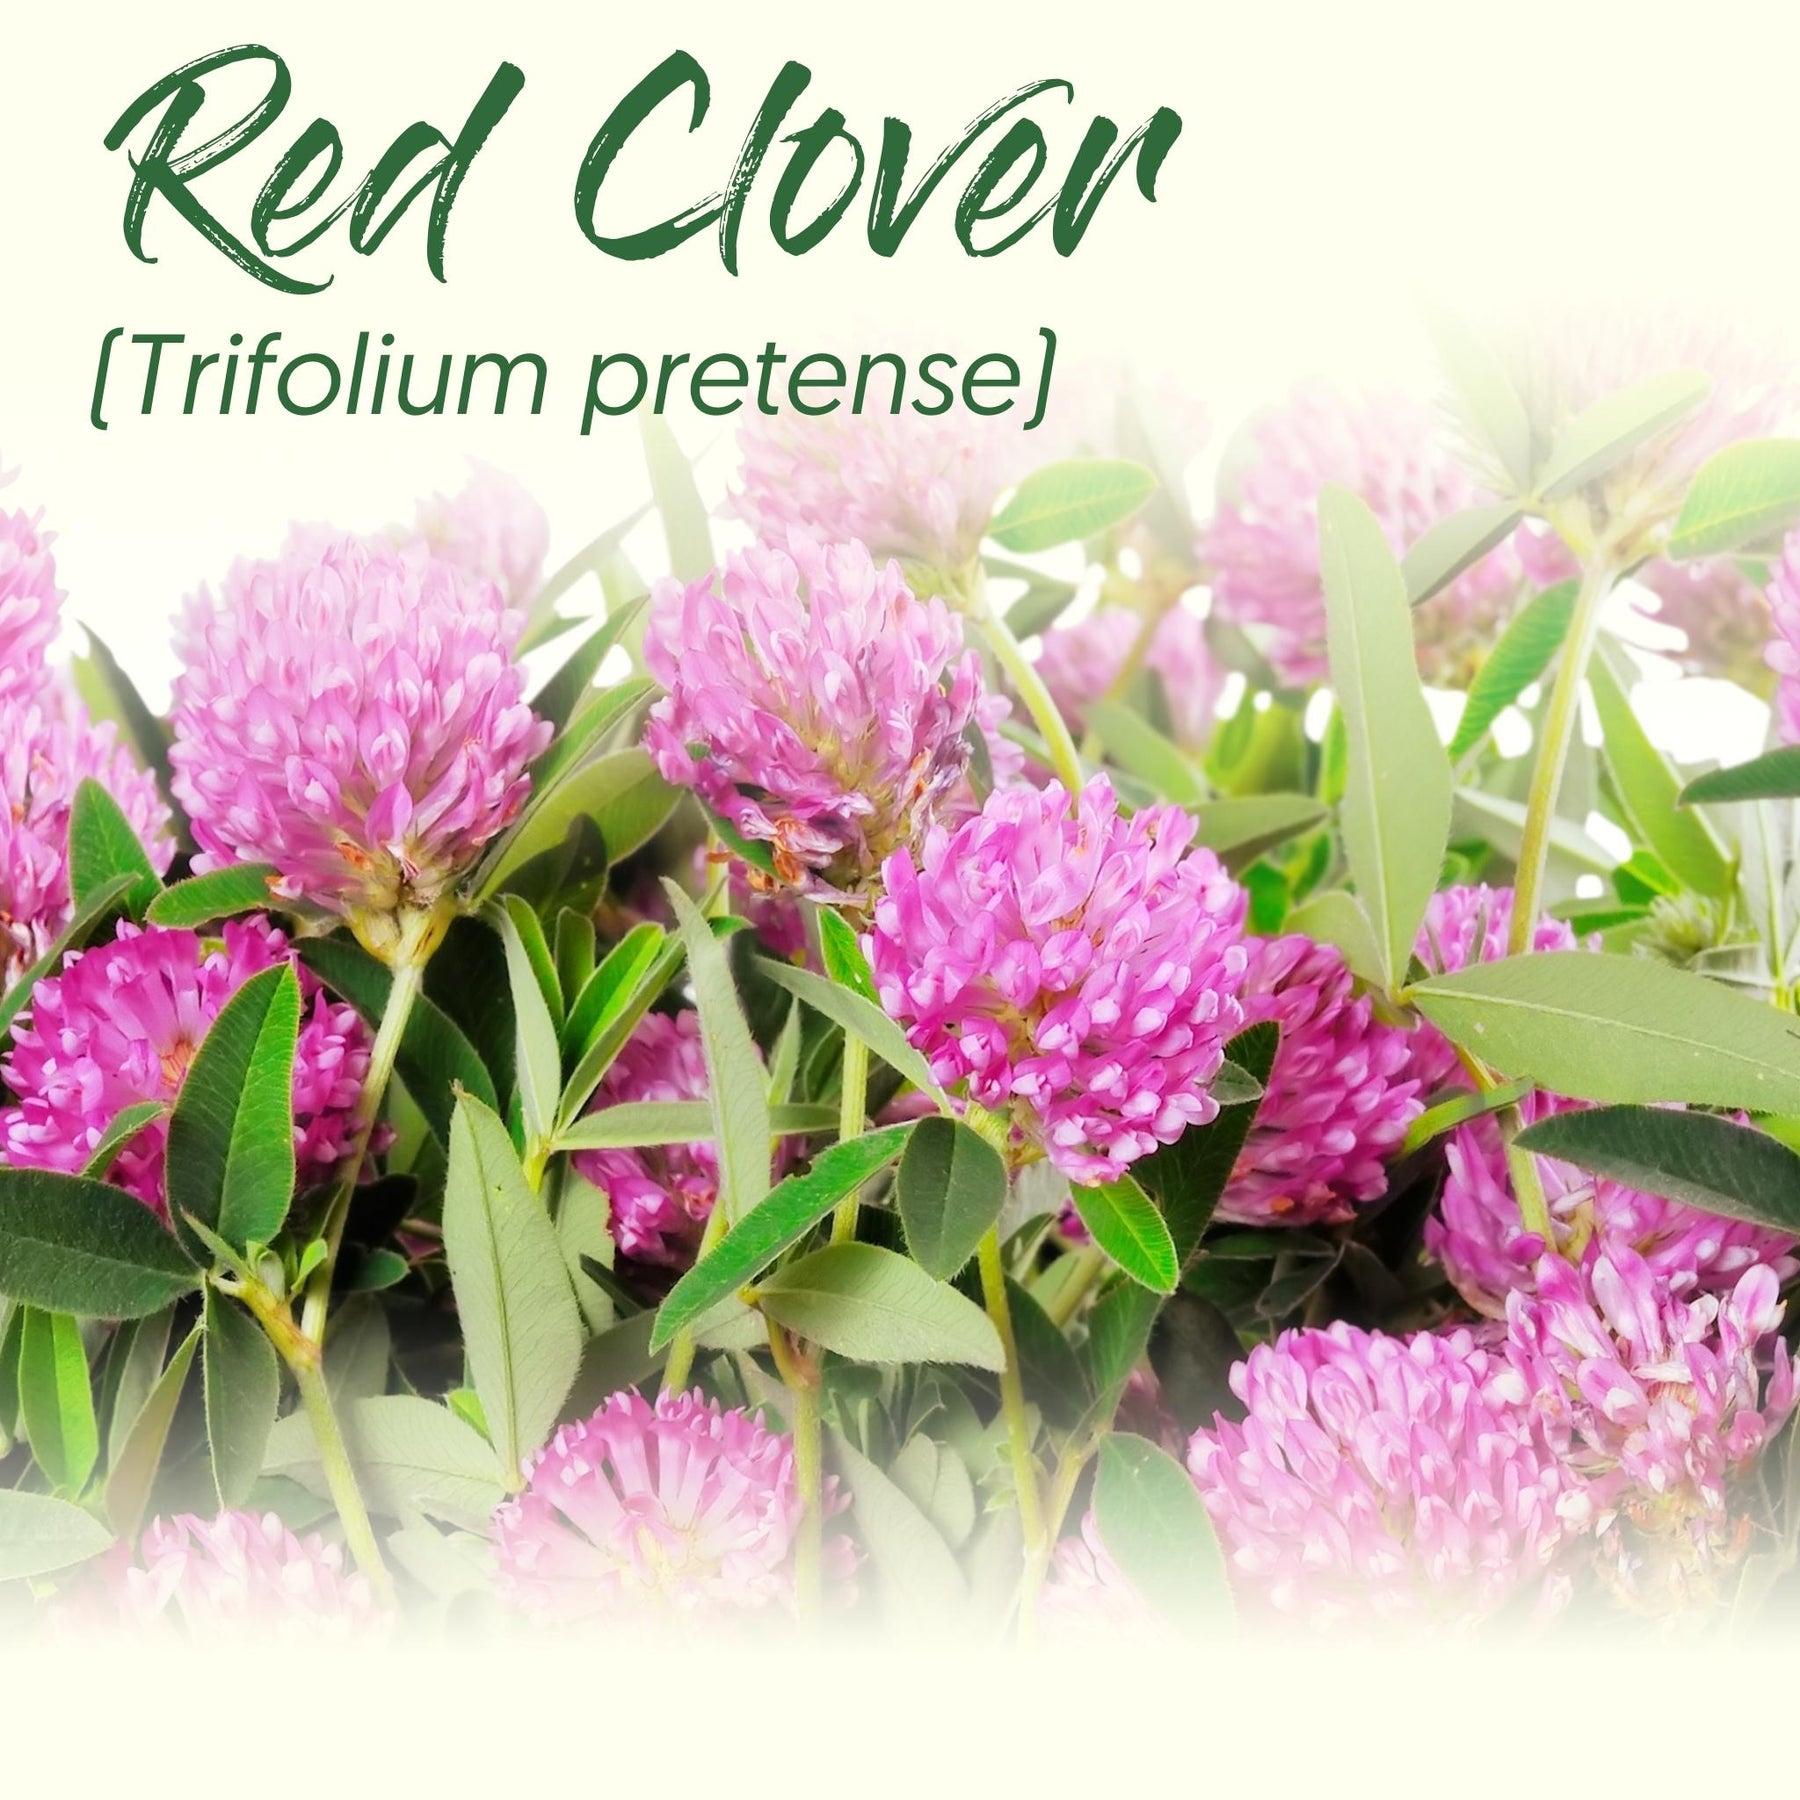 Medicinal Herb Spotlight: Red Clover